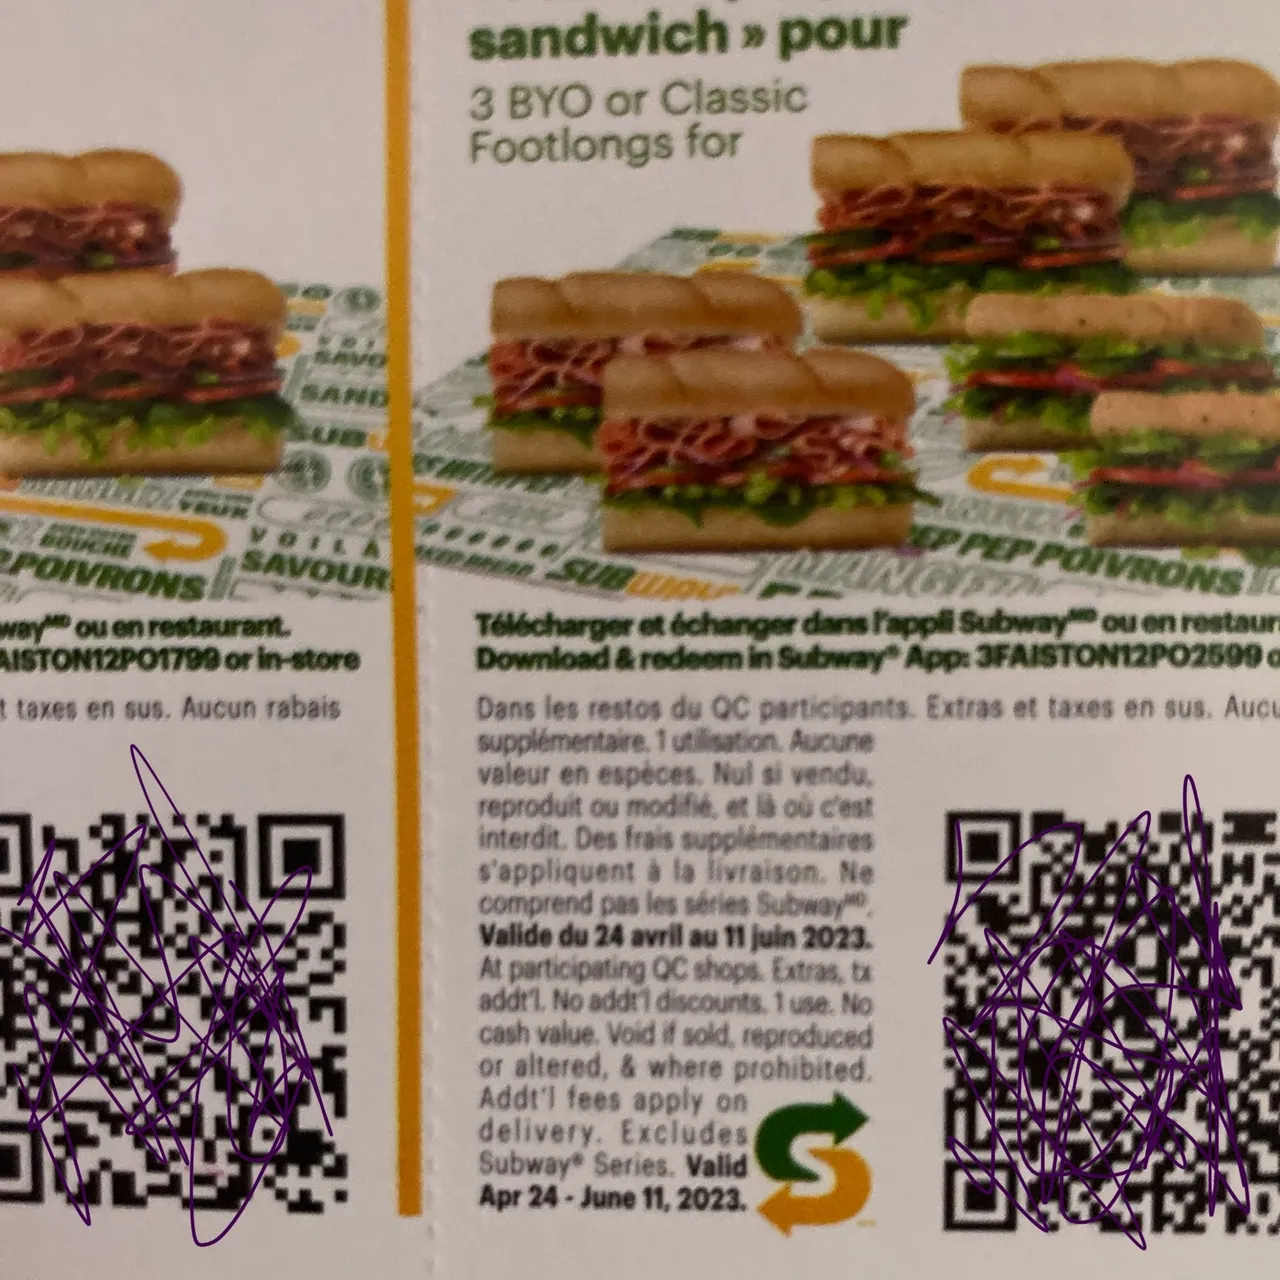 Free Subway coupons photo 3